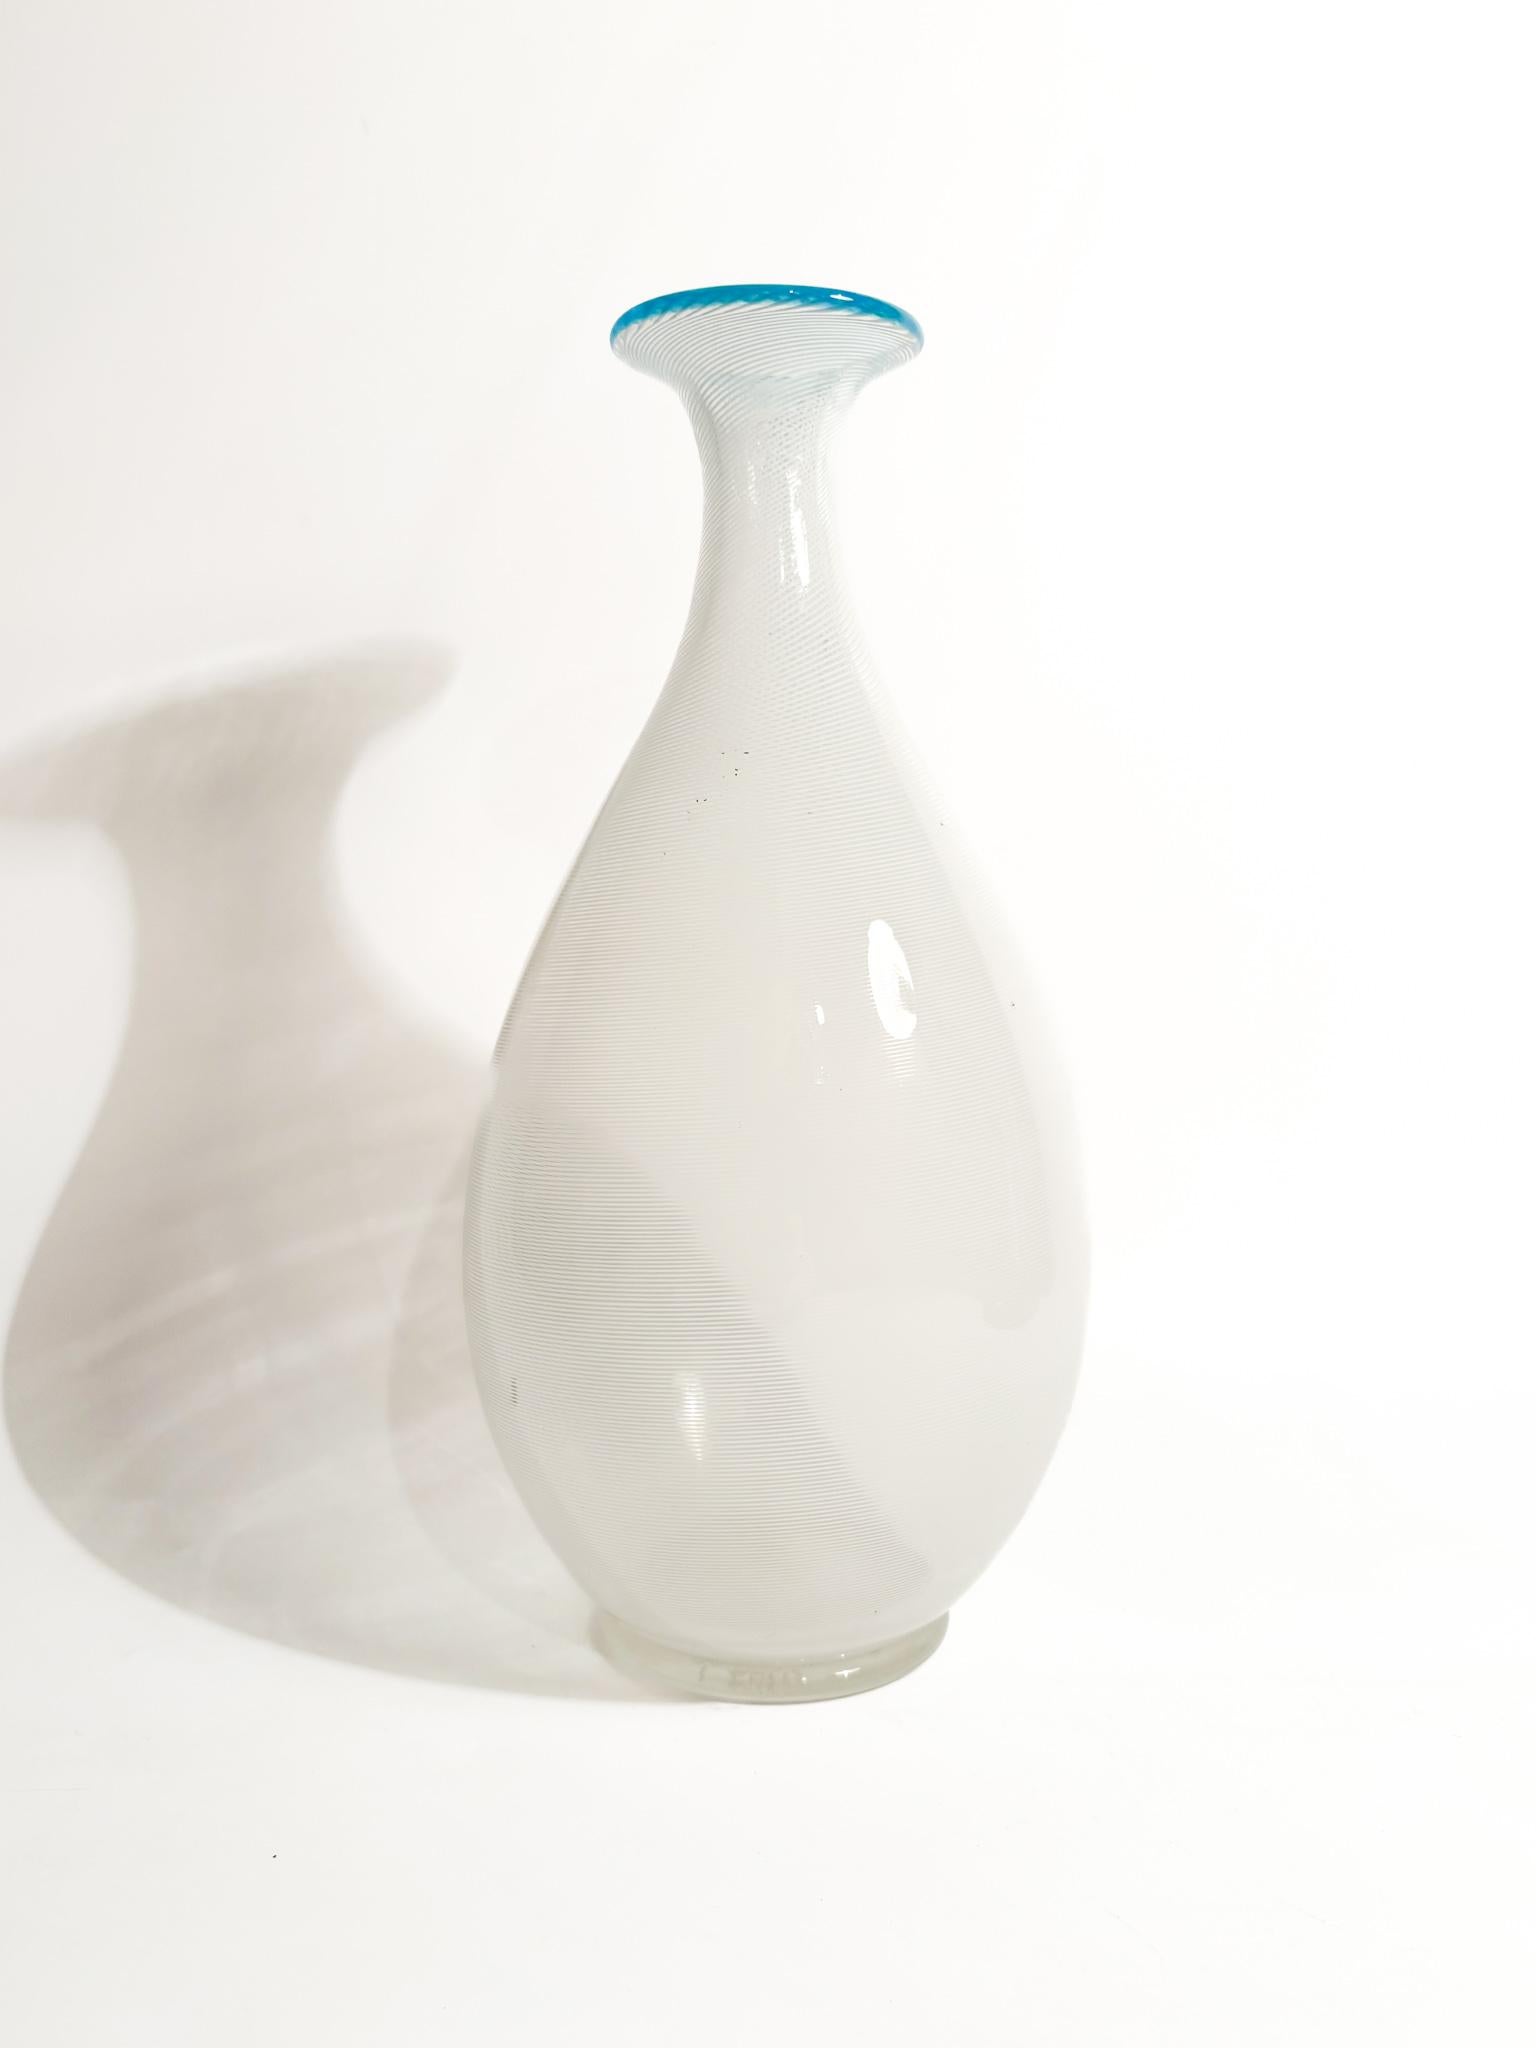 Vase aus weißem und hellblauem Murano-Glas mit filigranen Verzierungen, hergestellt von Barovier & Toso in den 1950er Jahren

Ø 11 cm h 25,5 cm

Barovier & Toso ist ein renommiertes italienisches Unternehmen, das sich auf Luxusleuchten aus